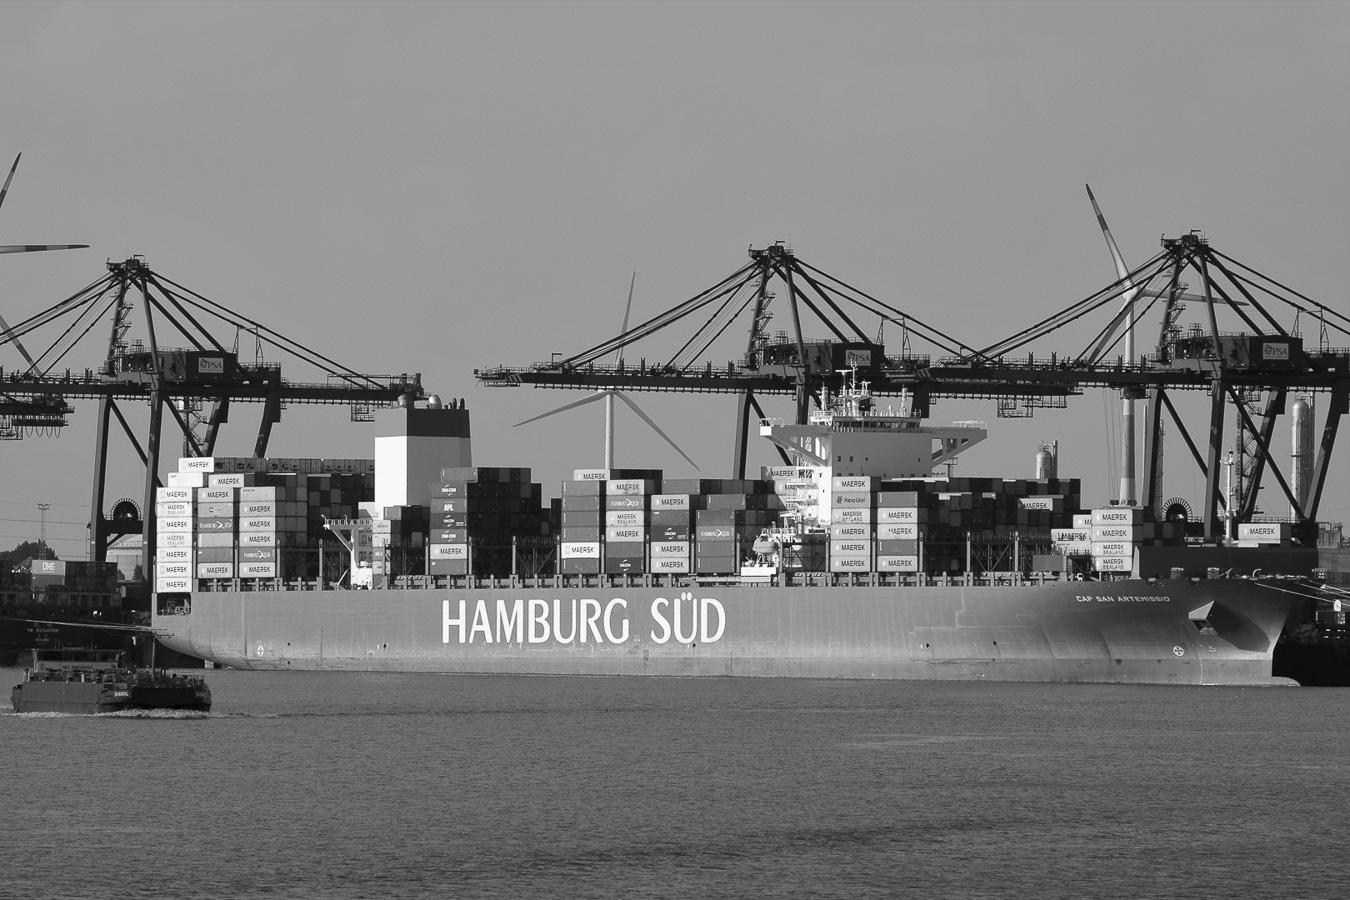 Peter Vanhoof - Port of Antwerp - (1/1000 sec. bij f / 5,6 ISO 200)